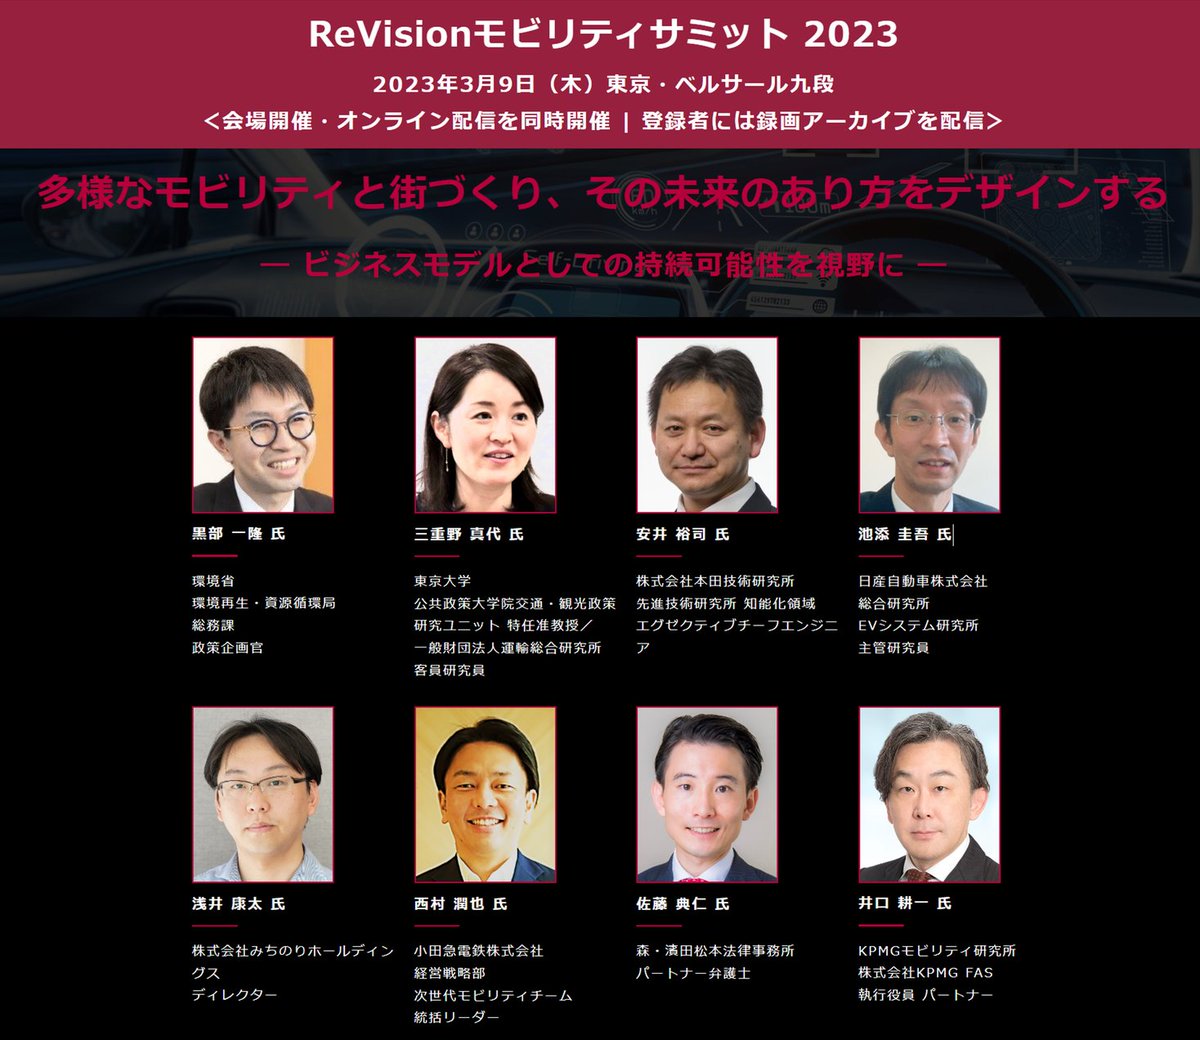 ホンダ、日産、環境省、小田急、みちのりHD 他から講演多数  『ReVisionモビリティサミット』 3月9日開催 prtimes.jp/main/html/rd/p…